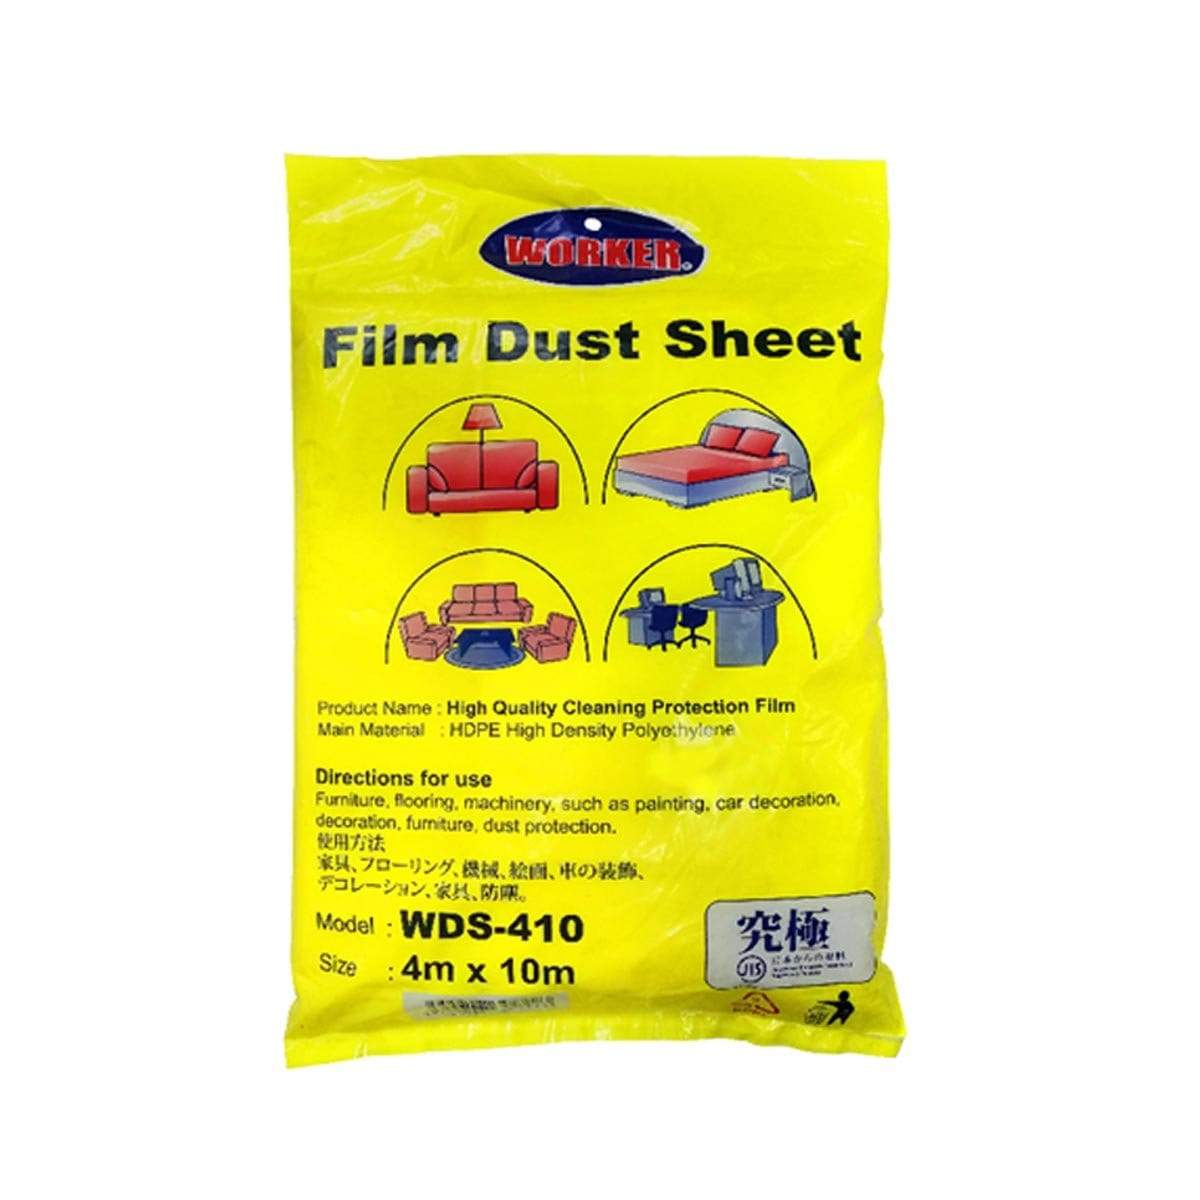 WORKER Film Dust Sheet WDS45